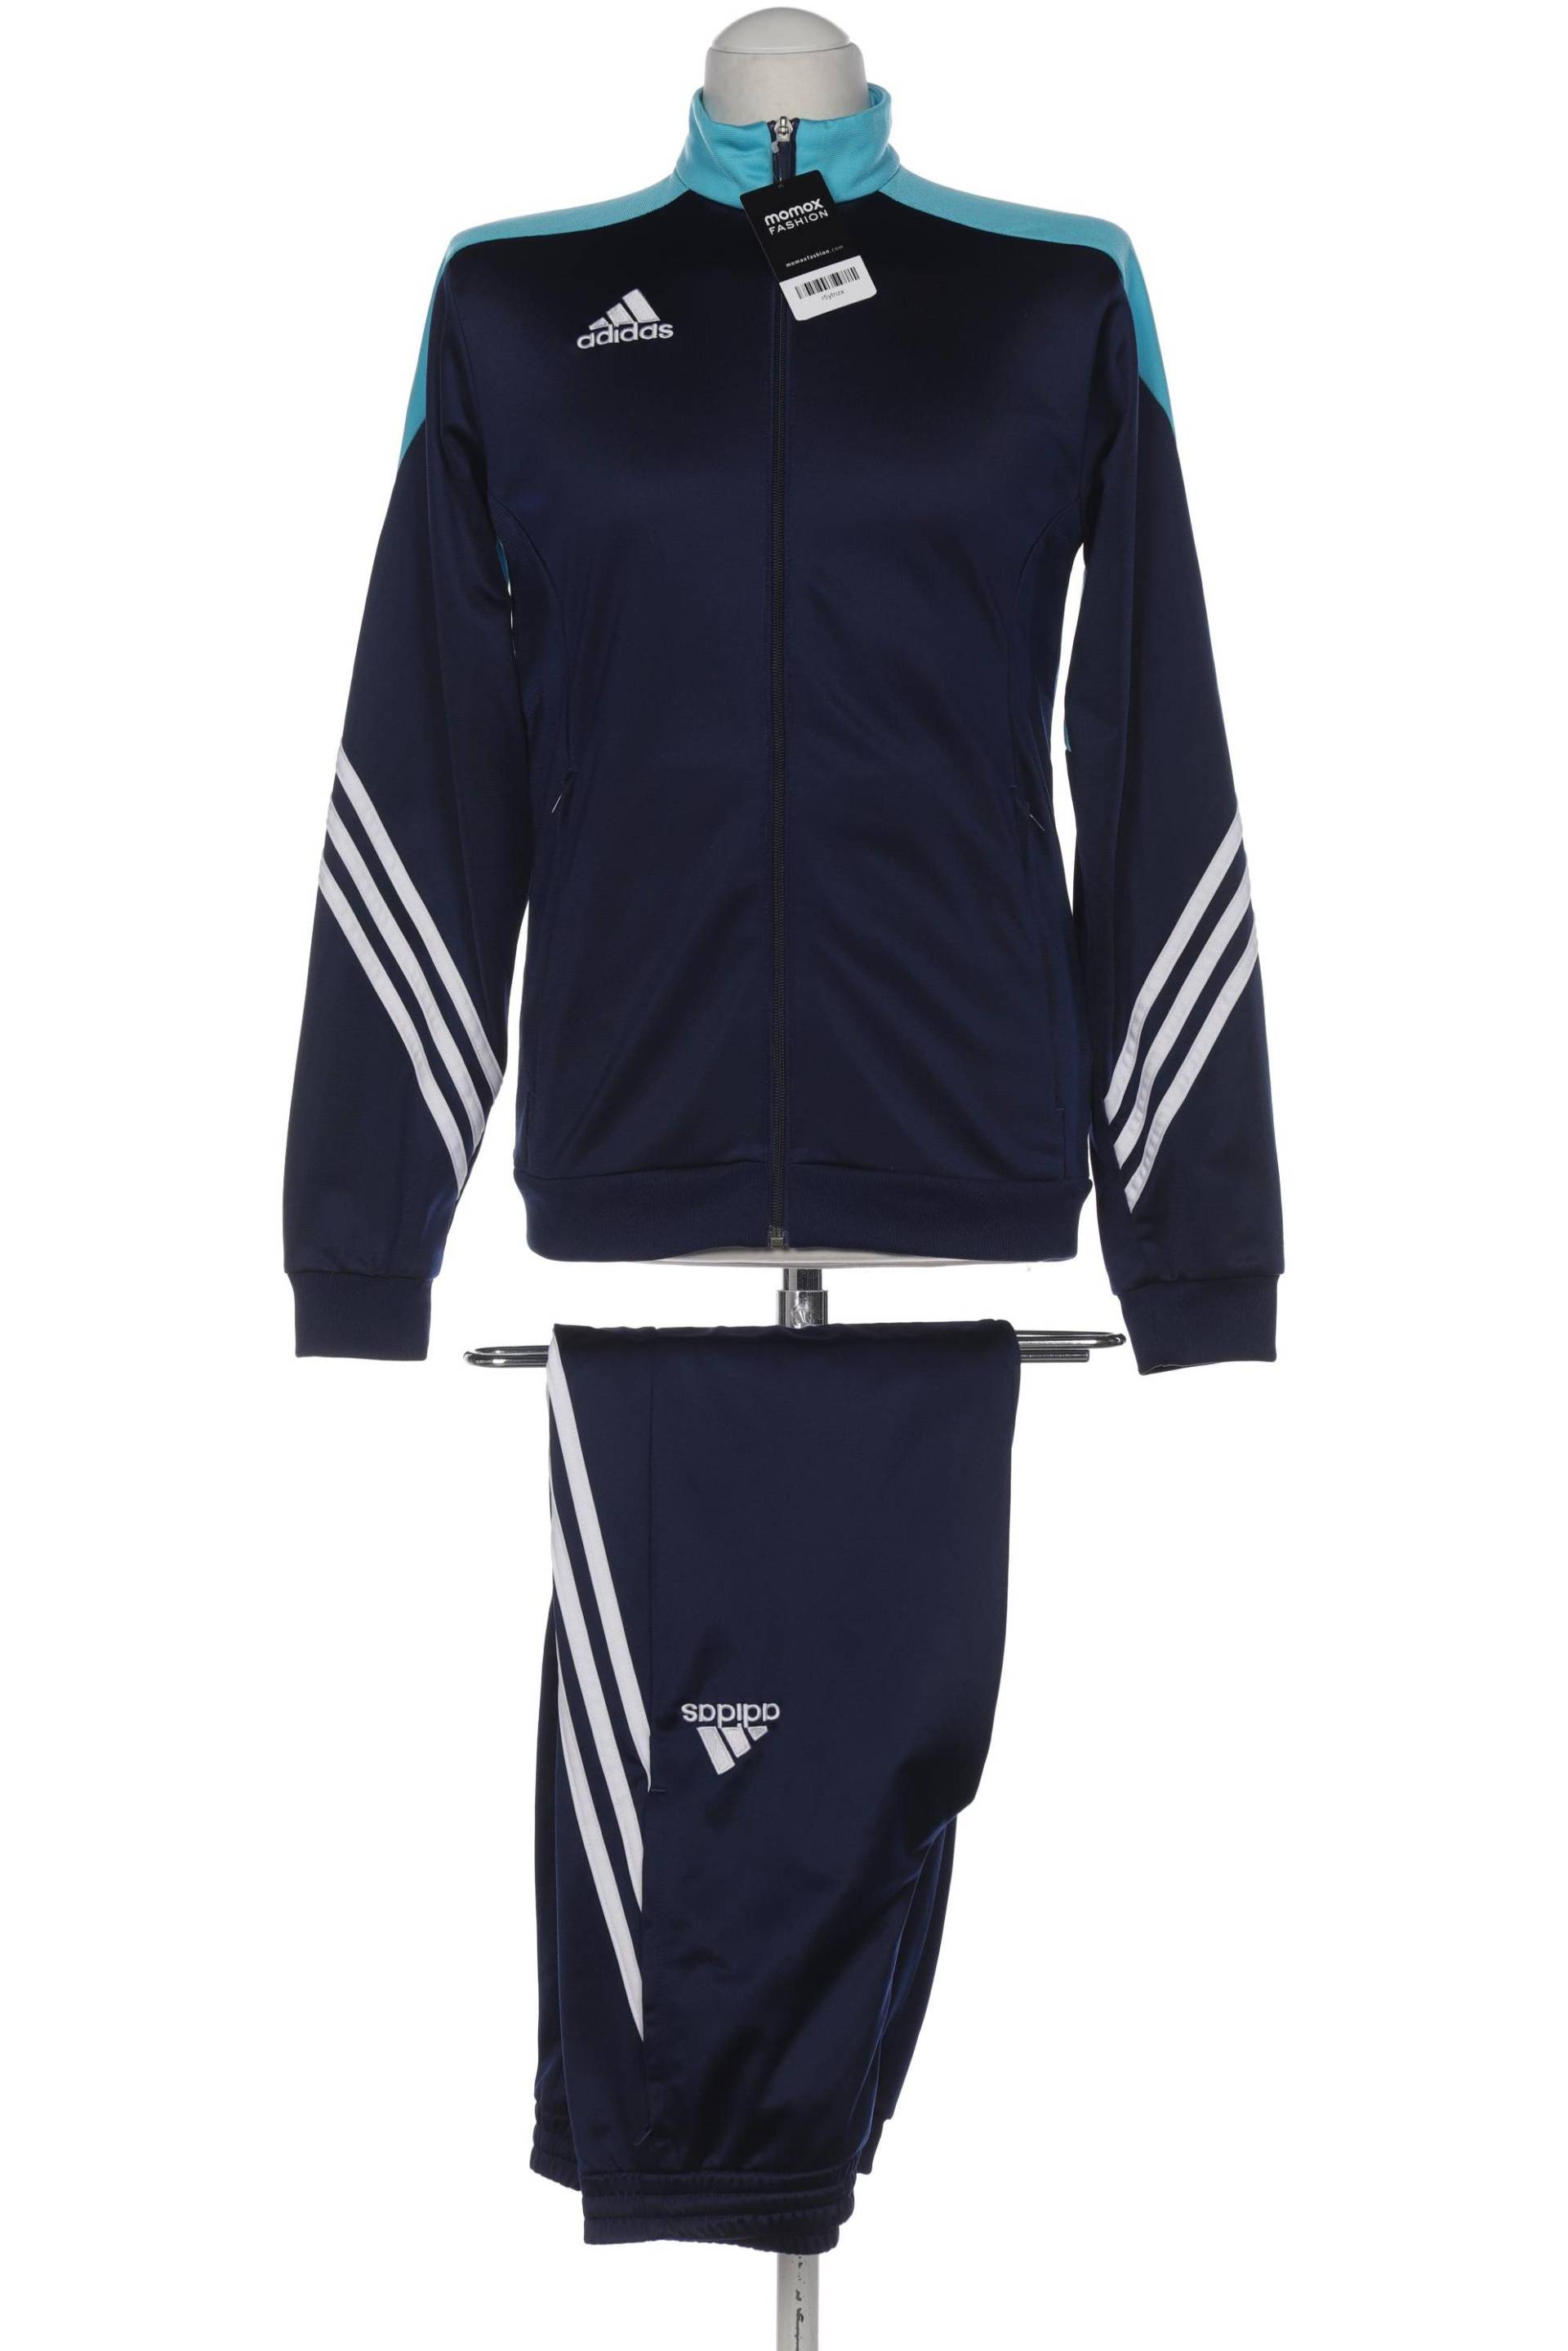 adidas Herren Anzug, marineblau, Gr. 46 von Adidas